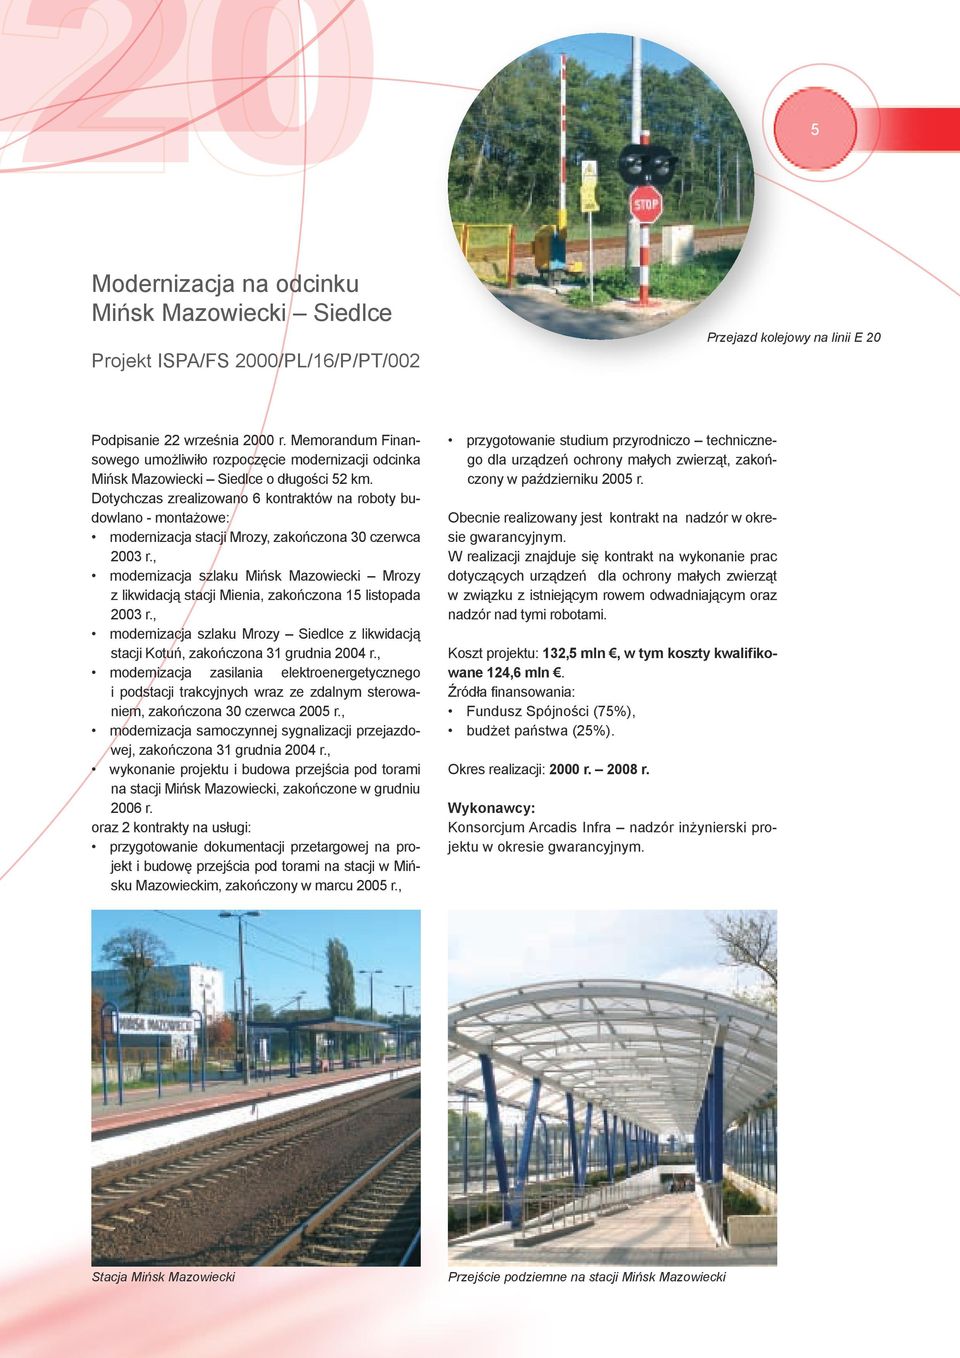 Dotychczas zrealizowano 6 kontraktów na roboty budowlano - montażowe: modernizacja stacji Mrozy, zakończona 30 czerwca 2003 r.